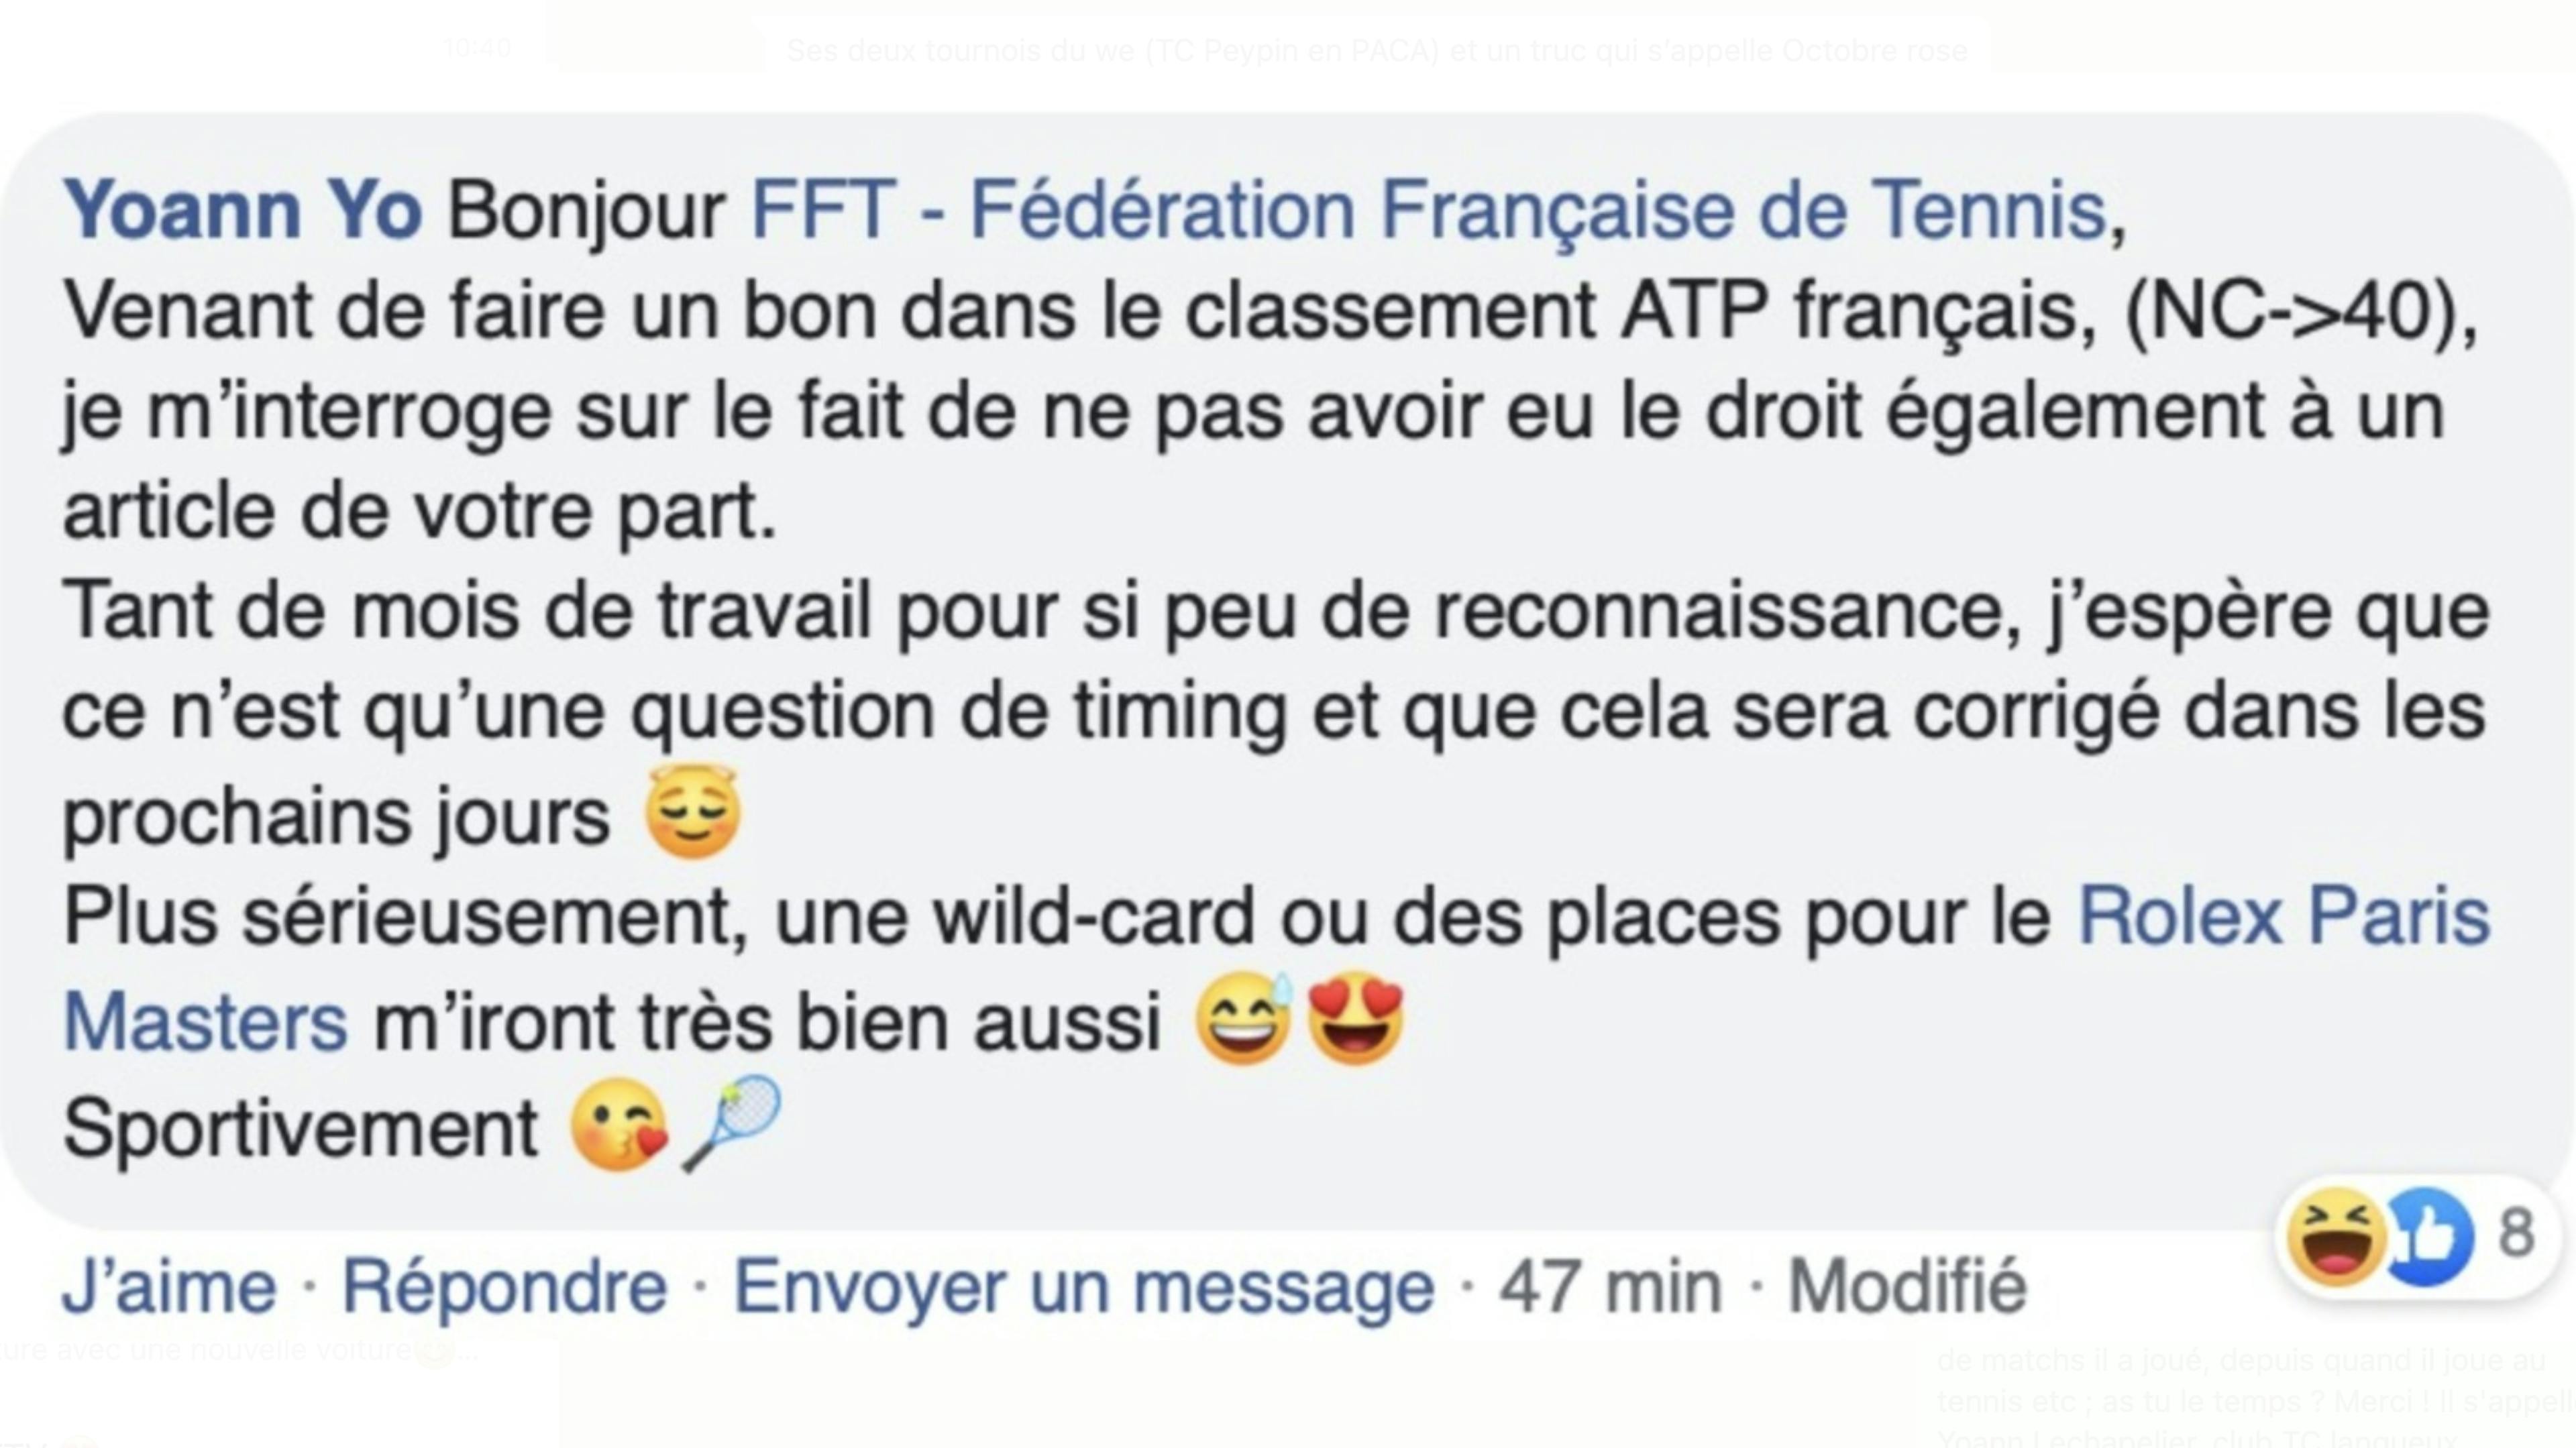 Yoann a interpellé la FFT avec humour sur Facebook !